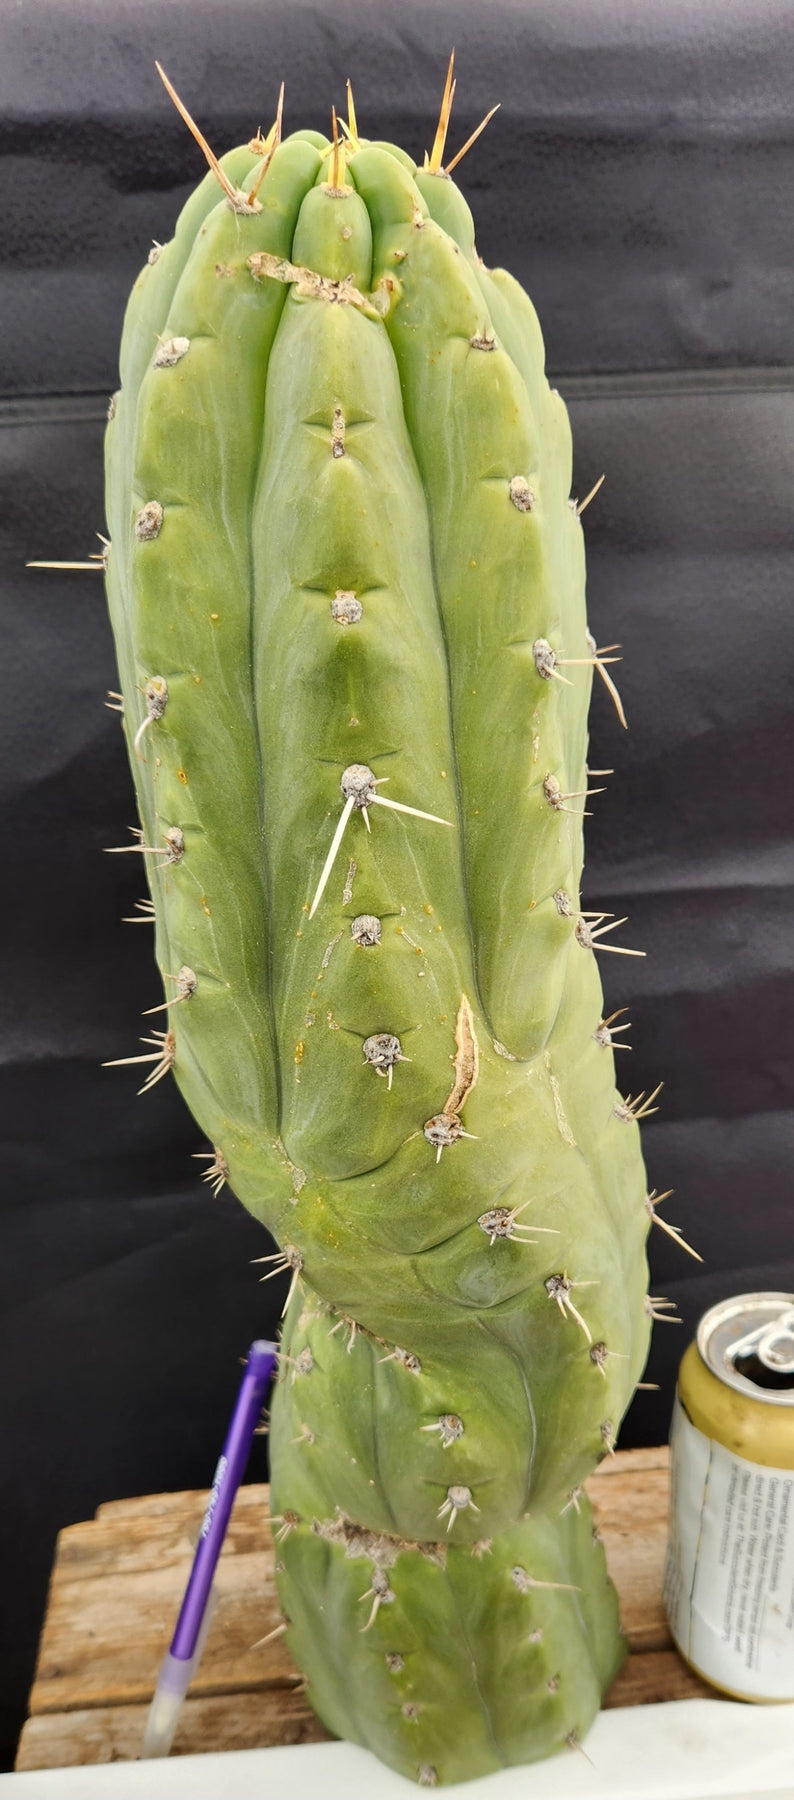 #EC189 EXACT Trichocereus "Mutt" Ornamental Cactus 18” cutting-Cactus - Large - Exact-The Succulent Source